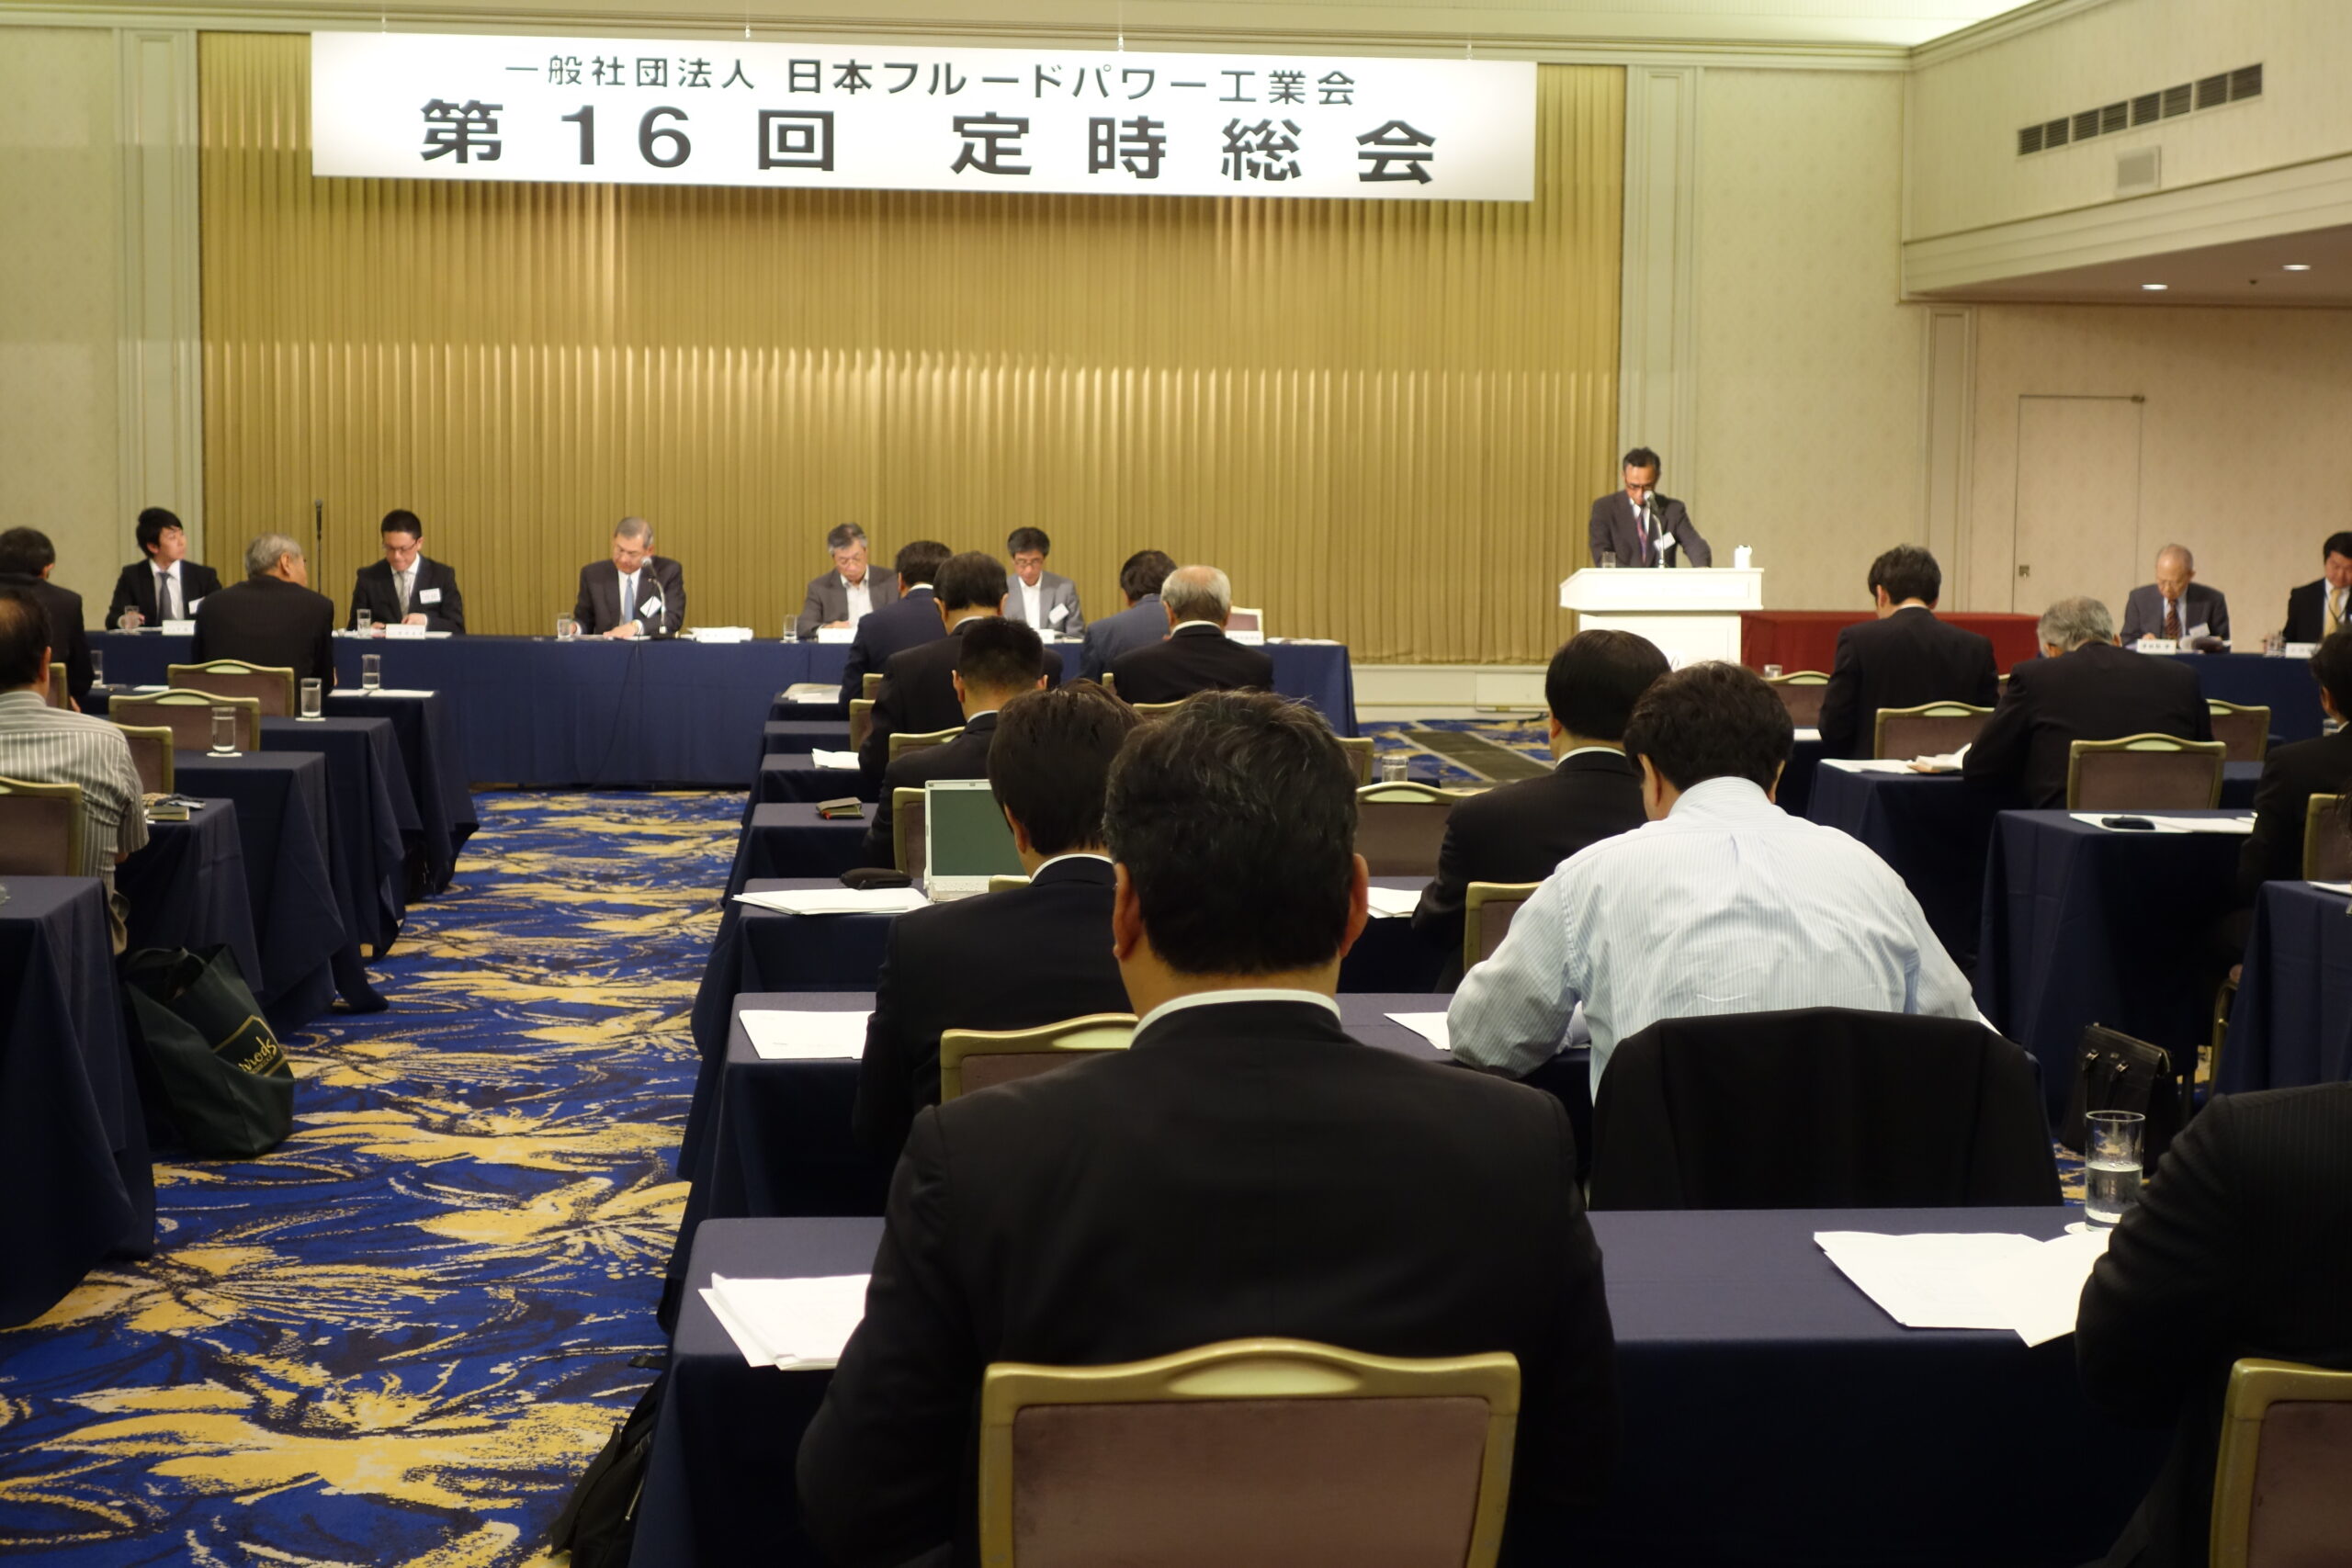 日本フルードパワー工業会 第16回定時総会開催 次世代の育成に重点